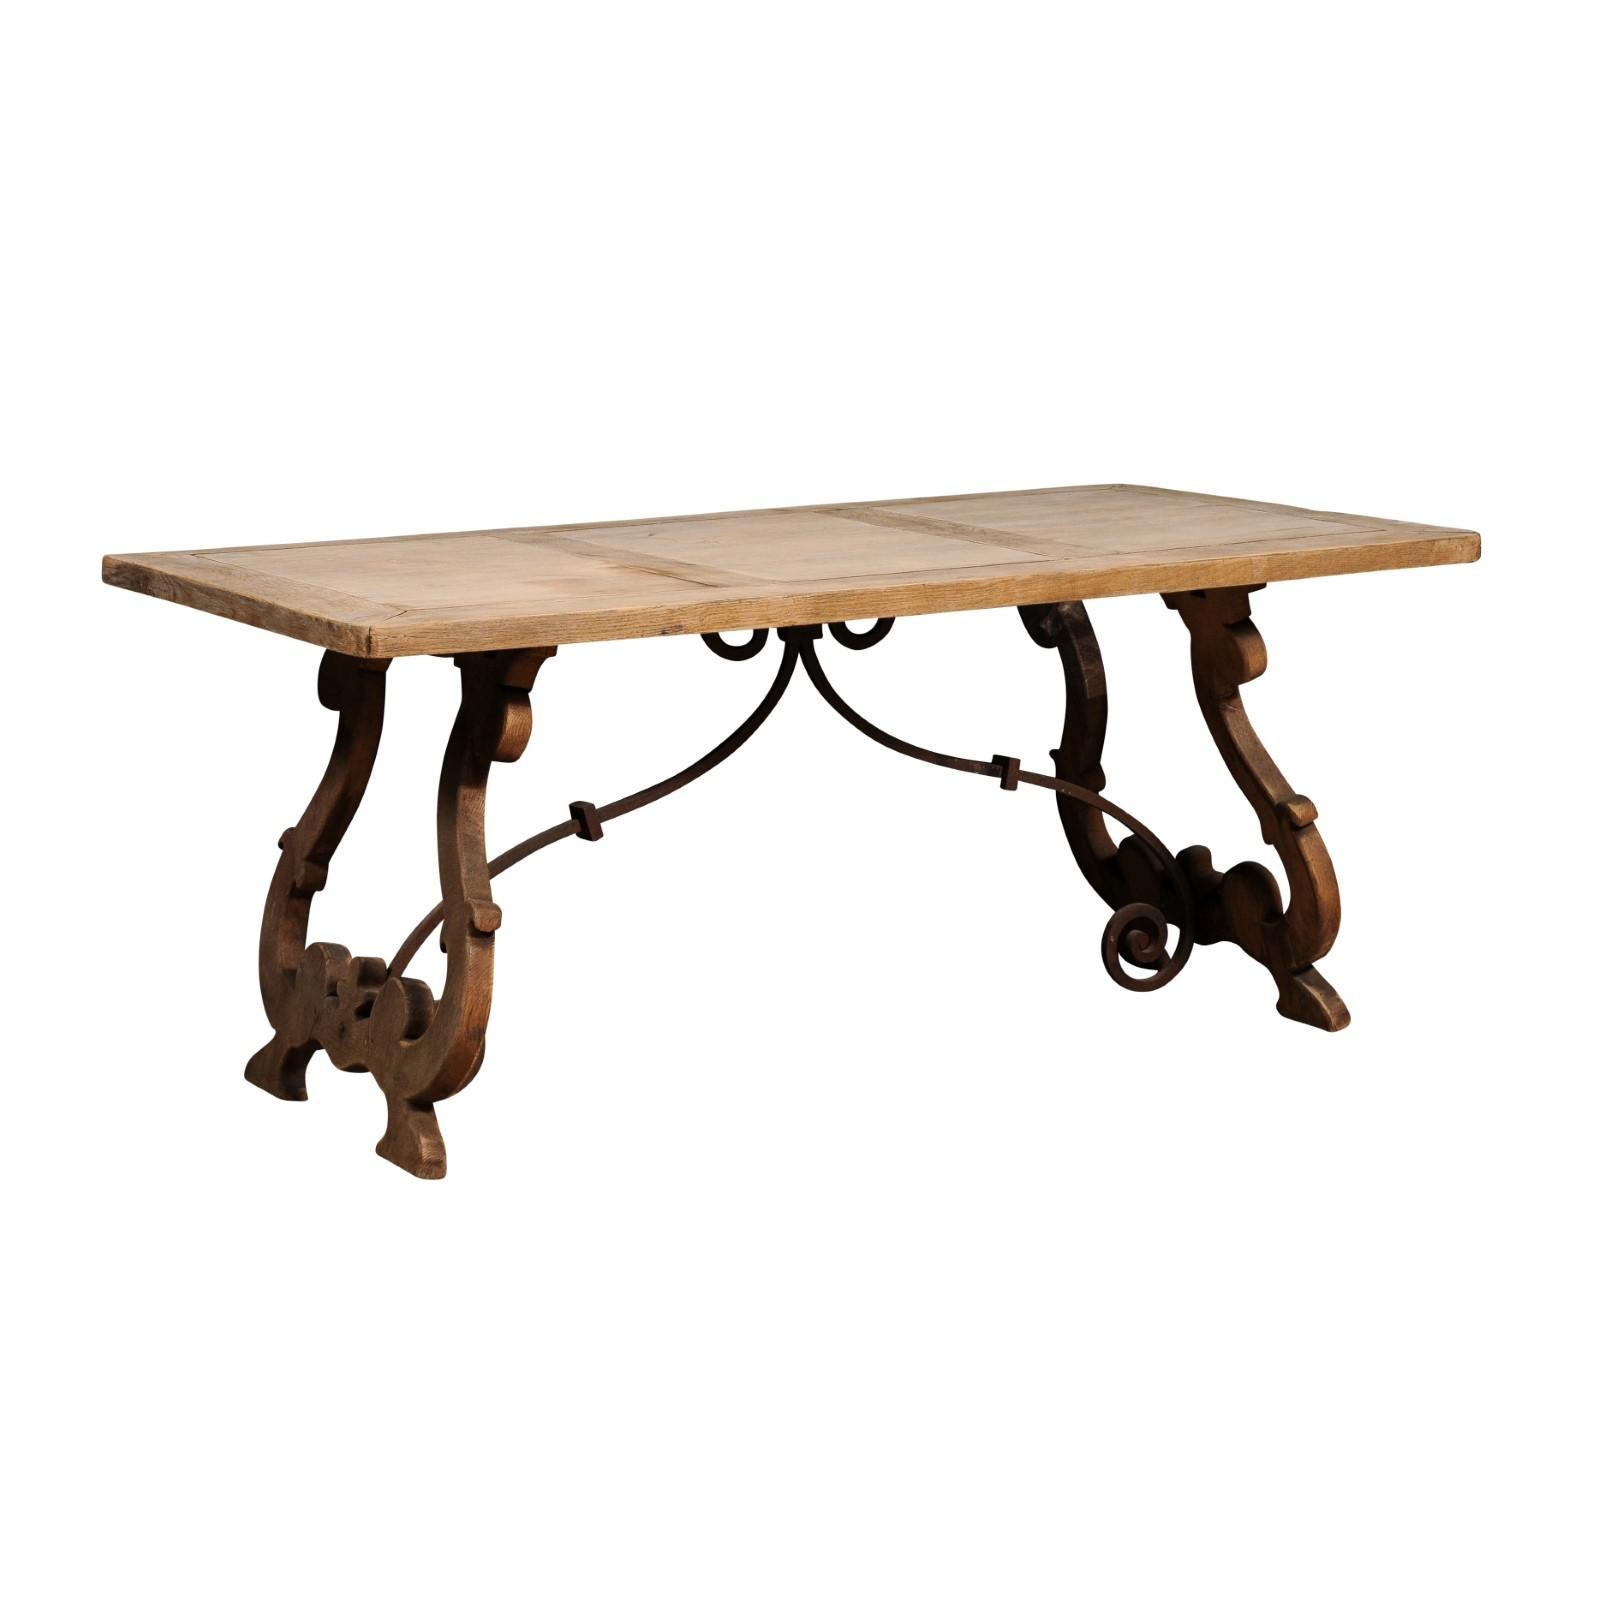 Table Fratino en chêne blanchi de style baroque espagnol, datant d'environ 1900, avec des pieds sculptés en forme de lyre et des brancards en fer. Remontez le temps et admirez la beauté captivante de cette table Fratino en chêne blanchi de style